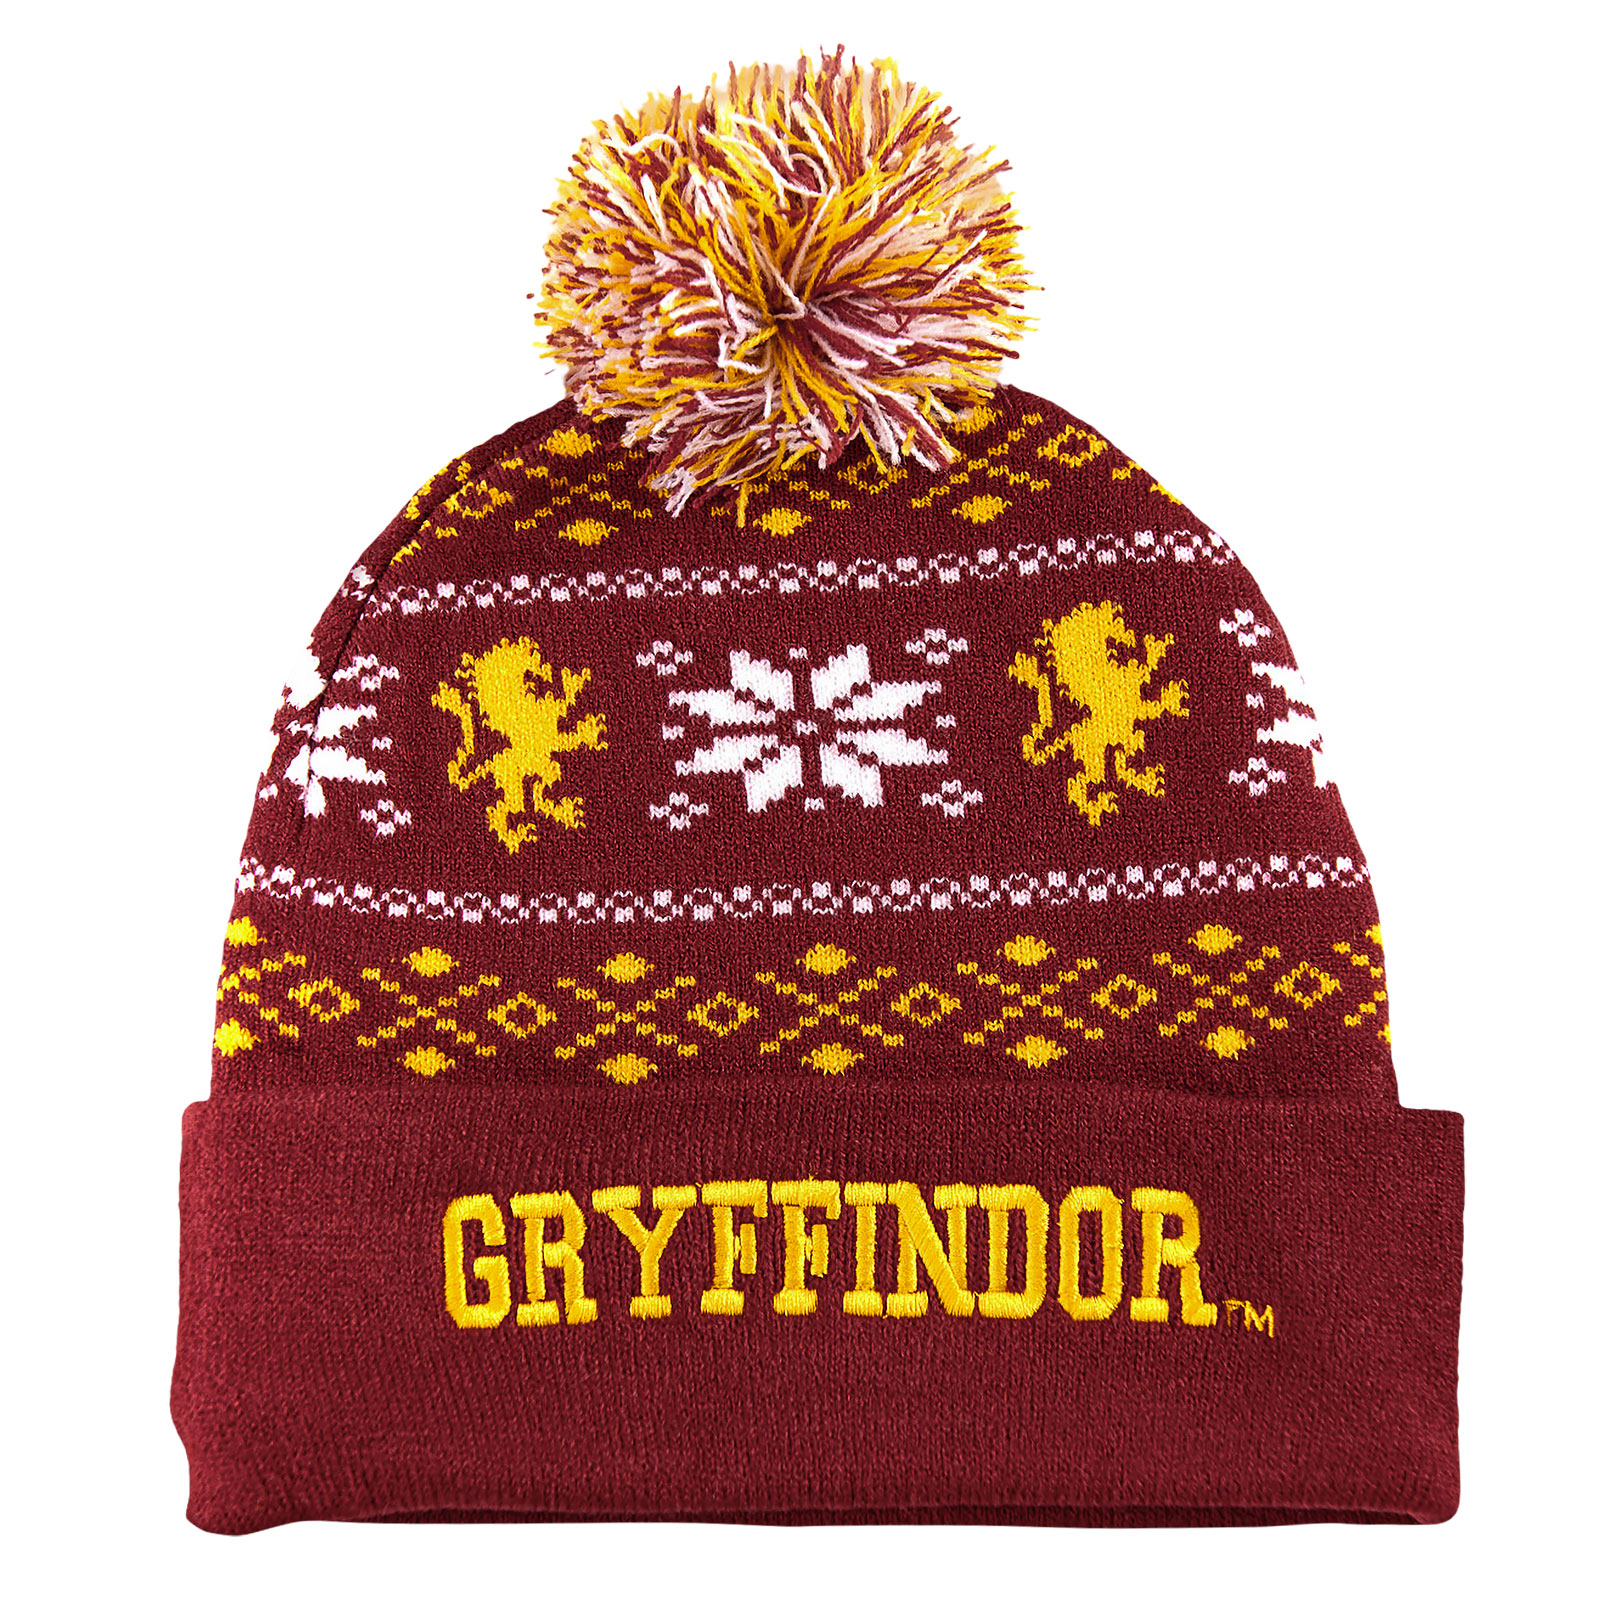 Harry Potter - Gryffindor Norwegian hat red